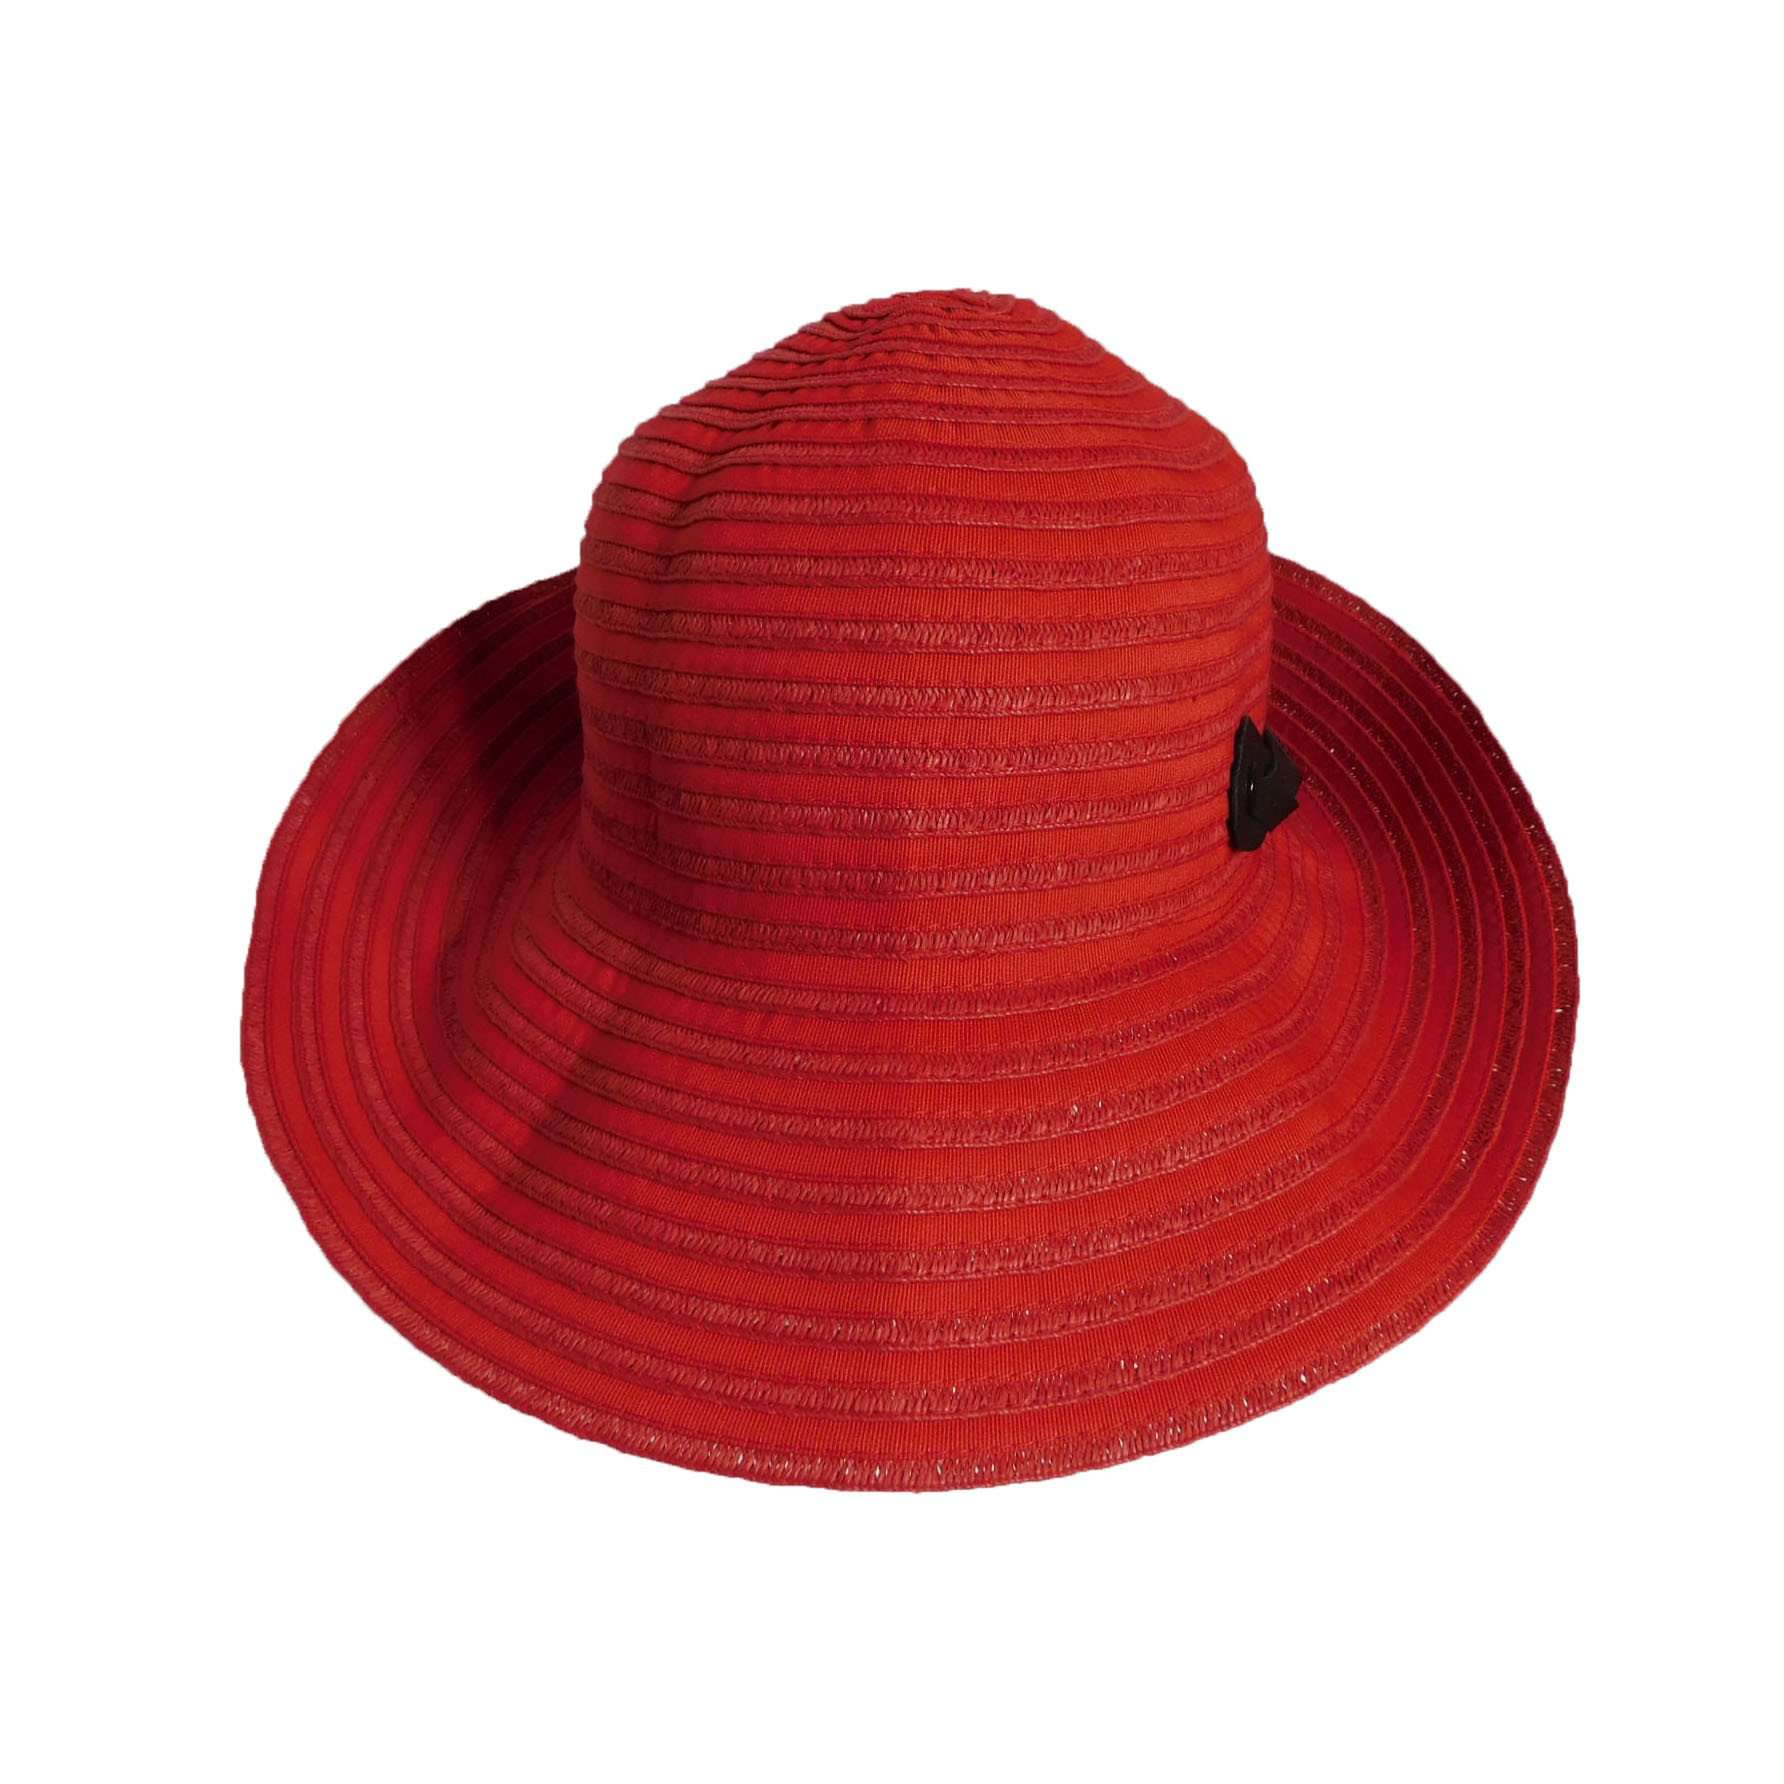 Packable Ribbon Bucket Hat - Boardwalk Style, Wide Brim Hat - SetarTrading Hats 